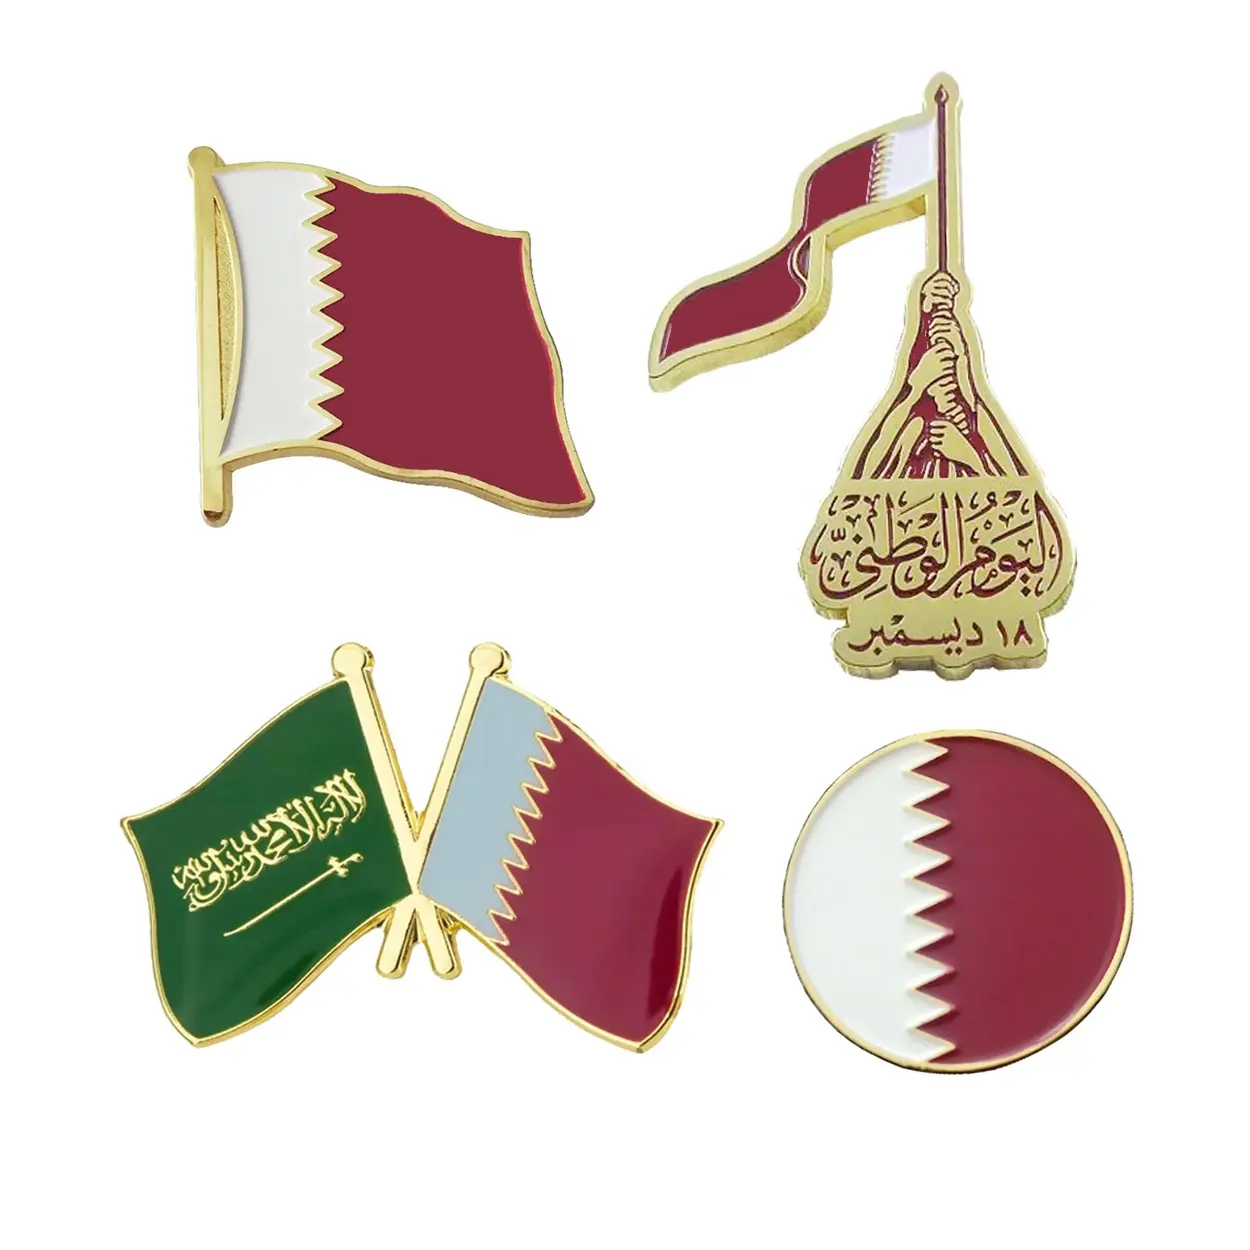 Commercio all'ingrosso personalizzato oro metallo paese doppia bandiera Oman mappa Qatar spilla spille regali festa nazionale smalto distintivo magnetico